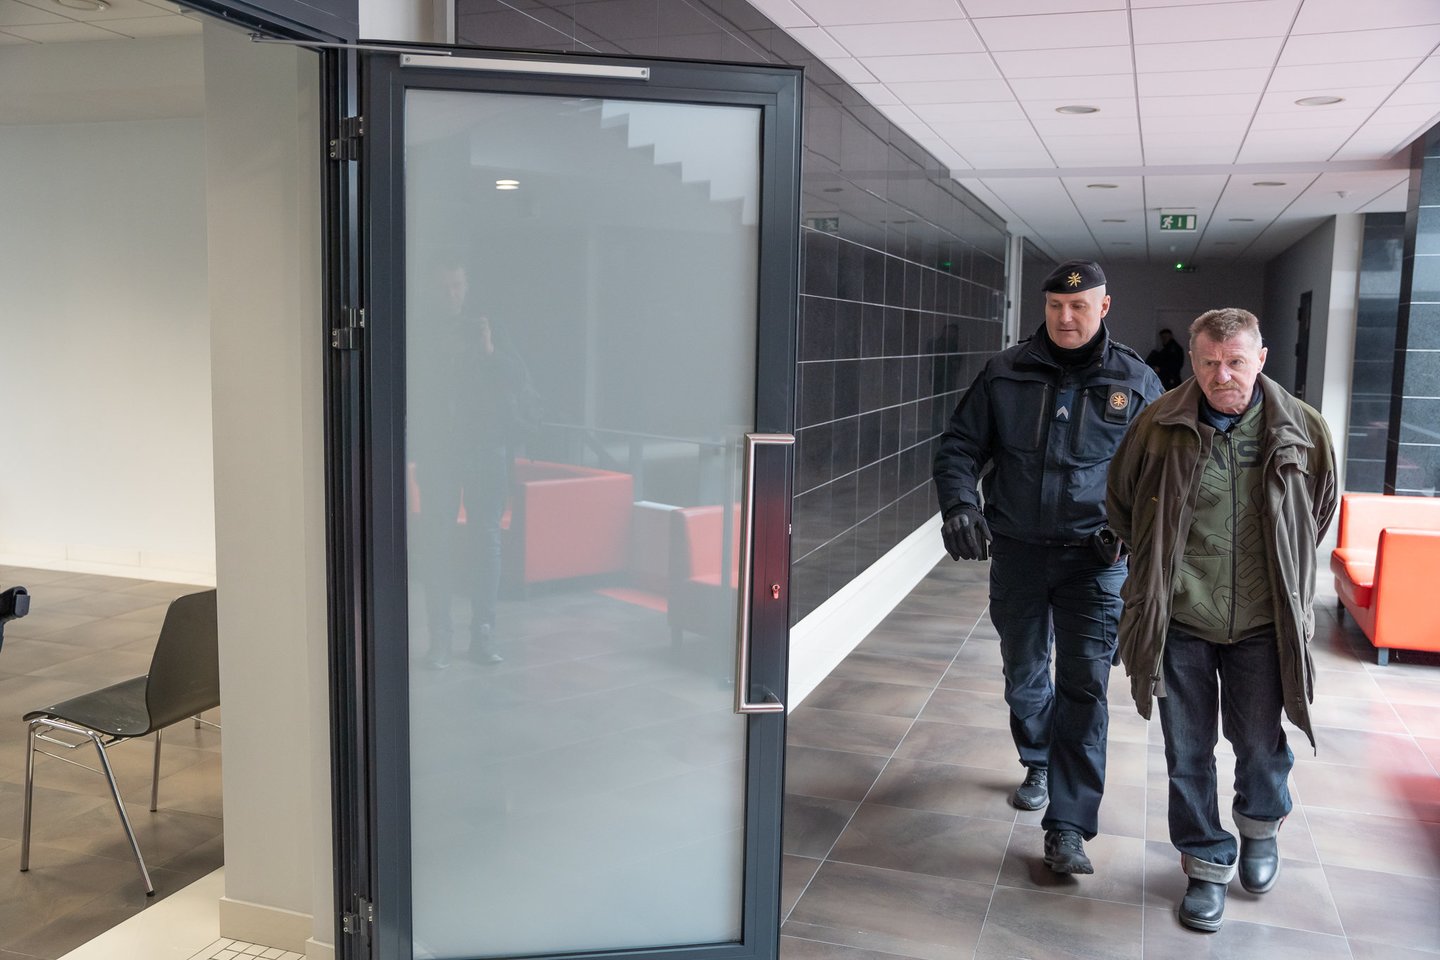  Kauno apygardos teismas už moters nužudymą prieniškiui V. Tamošiūnui skyrė 13 metų kalėjimo. <br> R. Vilkelio nuotr. 